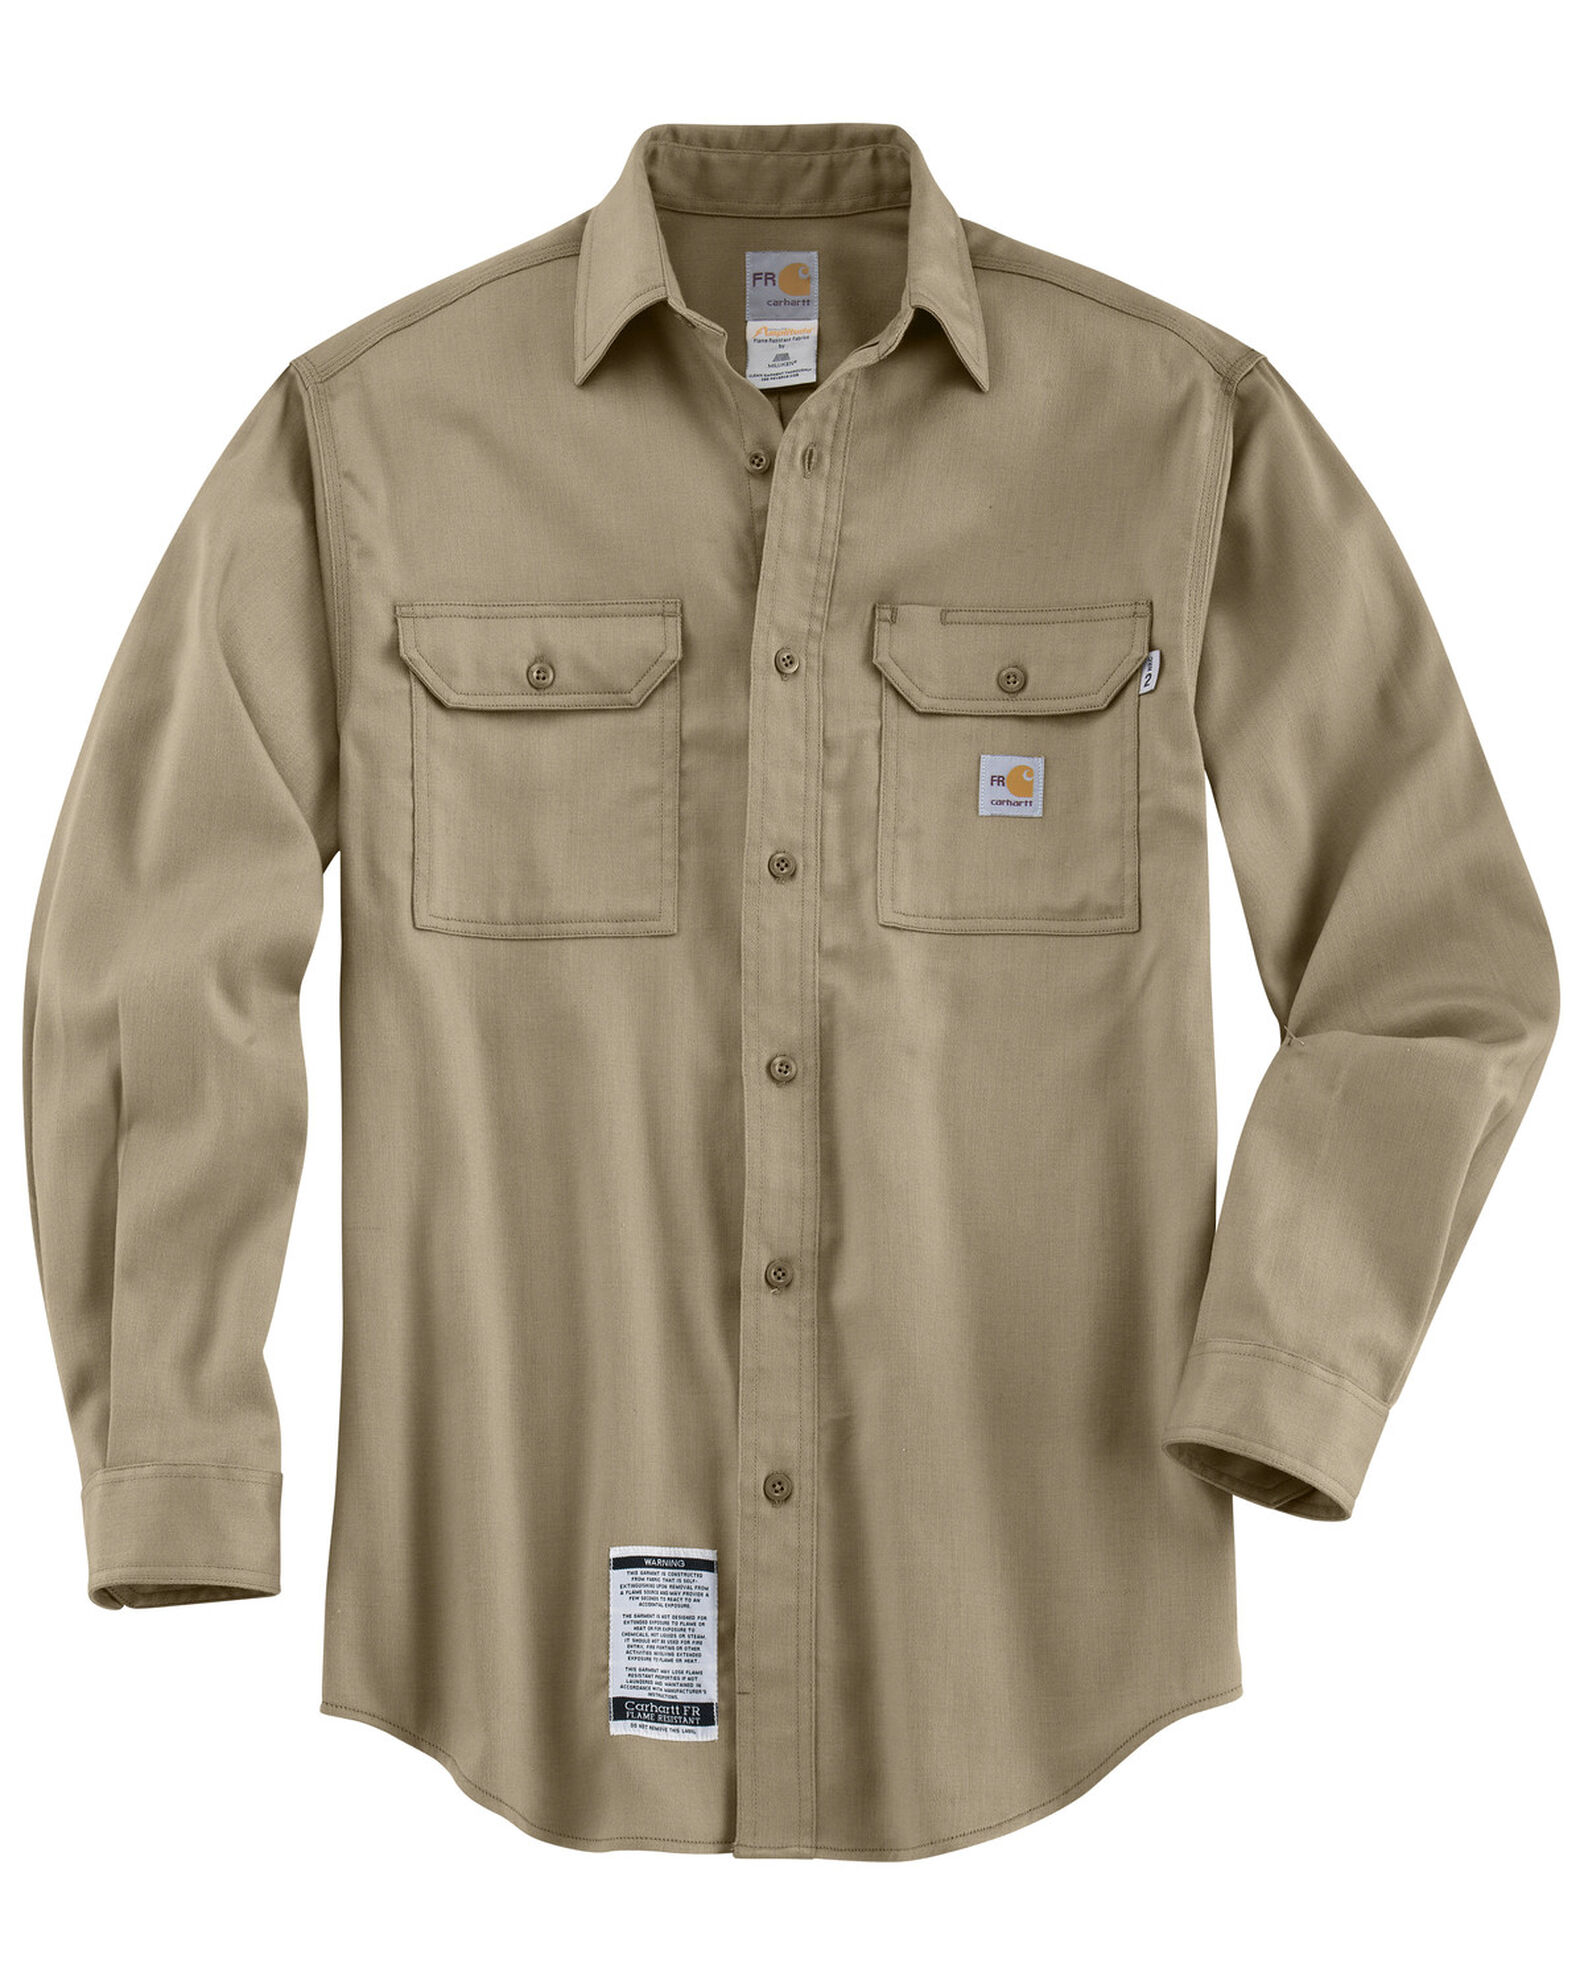 Carhartt Men's Flame Resistant Lightweight Twill Shirt